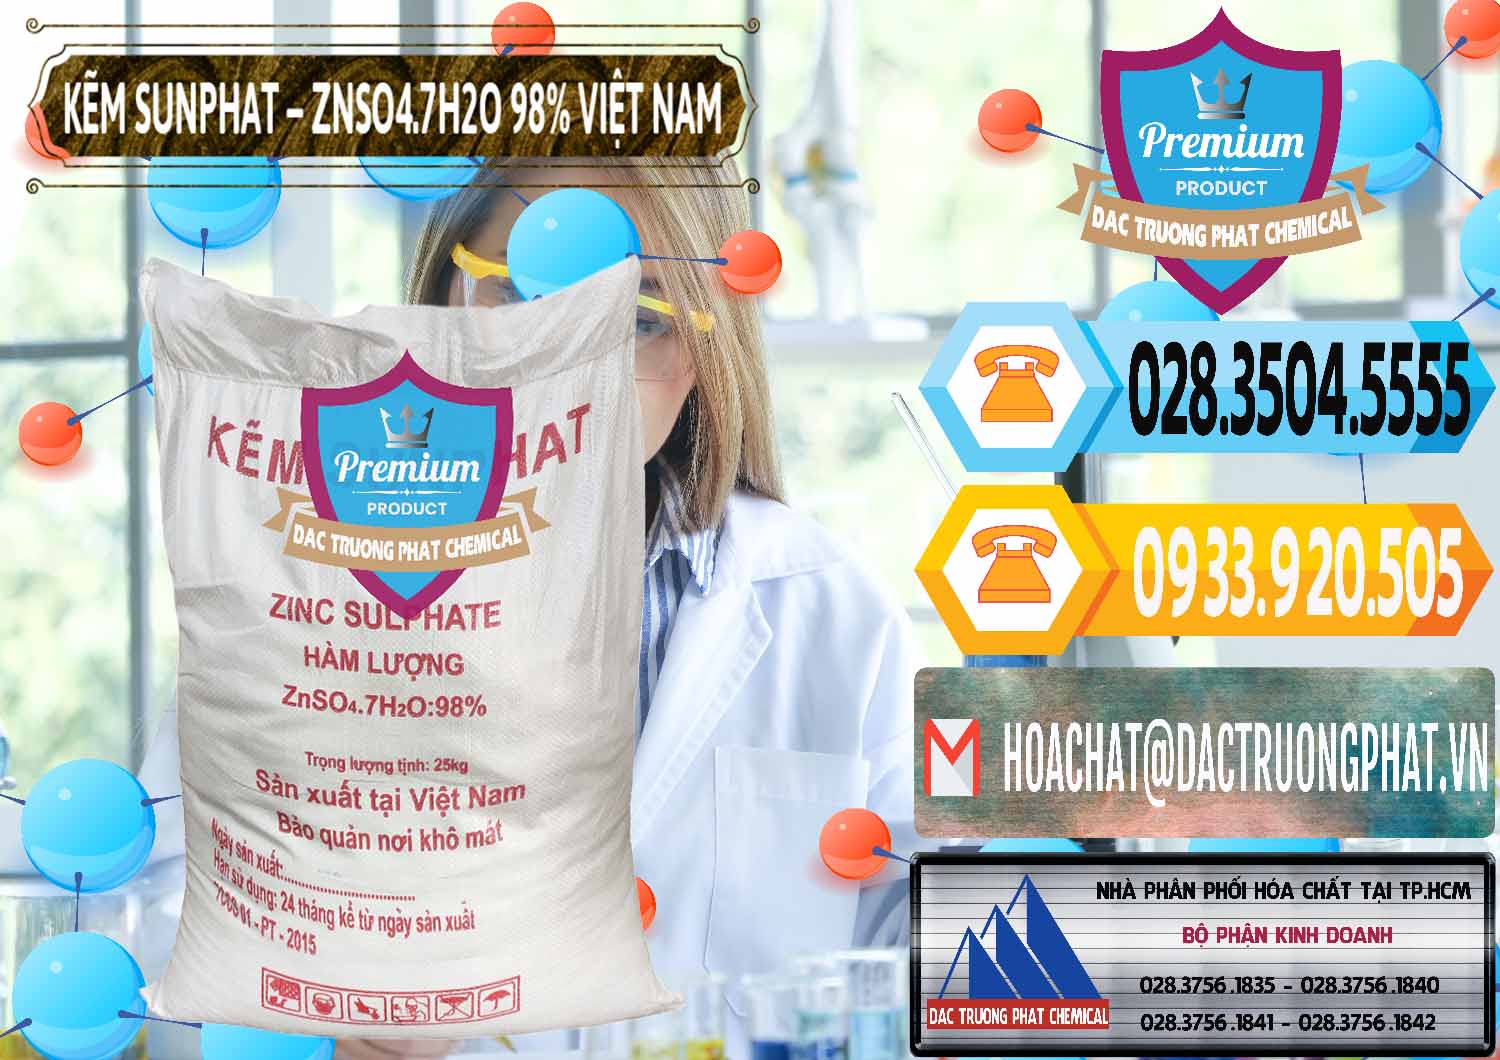 Công ty cung ứng & phân phối Kẽm Sunfat – ZNSO4.7H2O Việt Nam - 0189 - Chuyên phân phối _ cung cấp hóa chất tại TP.HCM - hoachattayrua.net